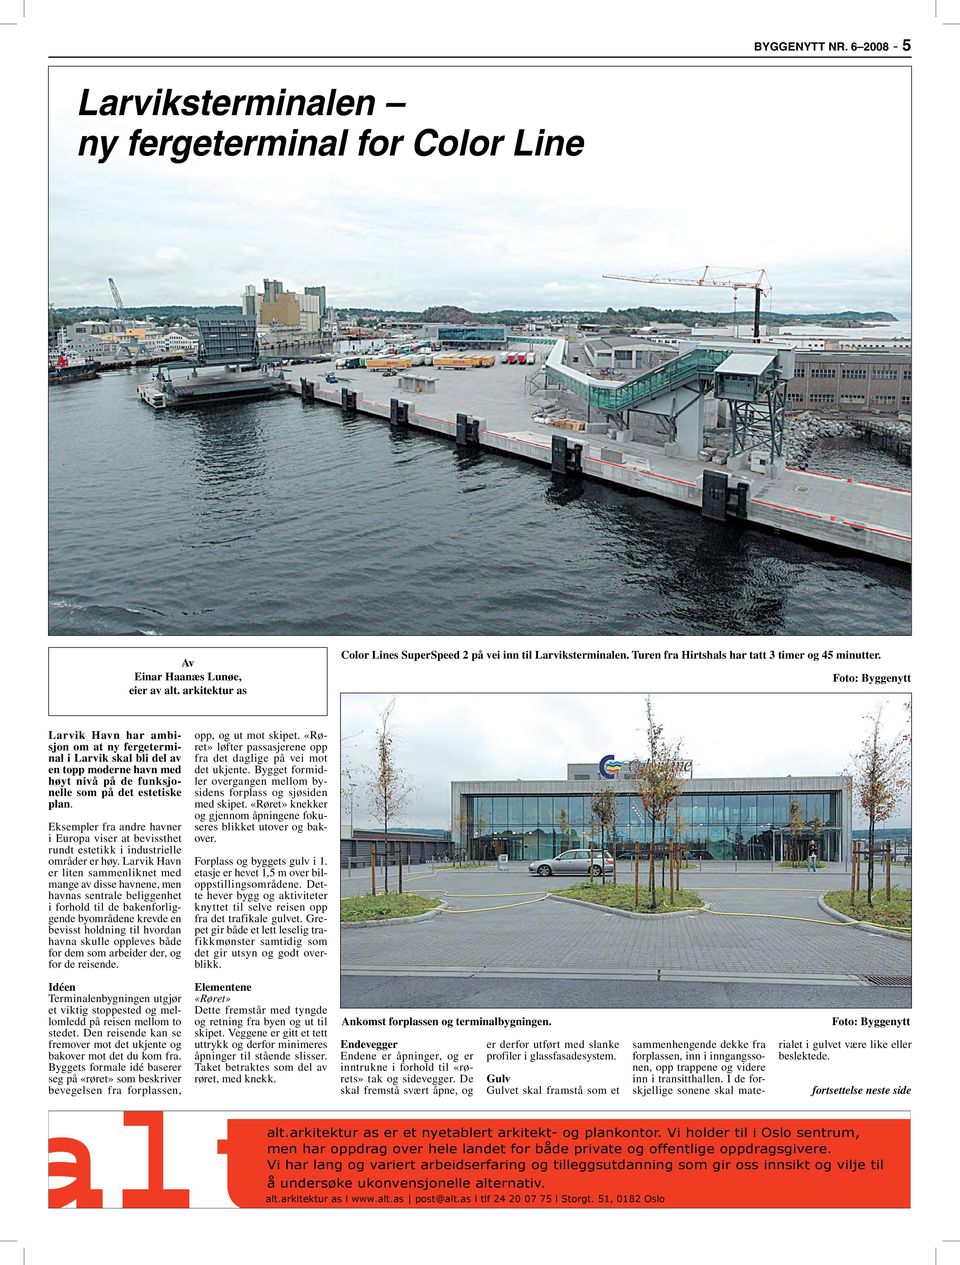 Larvik Havn har ambisjon om at ny fergeterminal i Larvik skal bli del av en topp moderne havn med høyt nivå på de funksjonelle som på det estetiske plan.